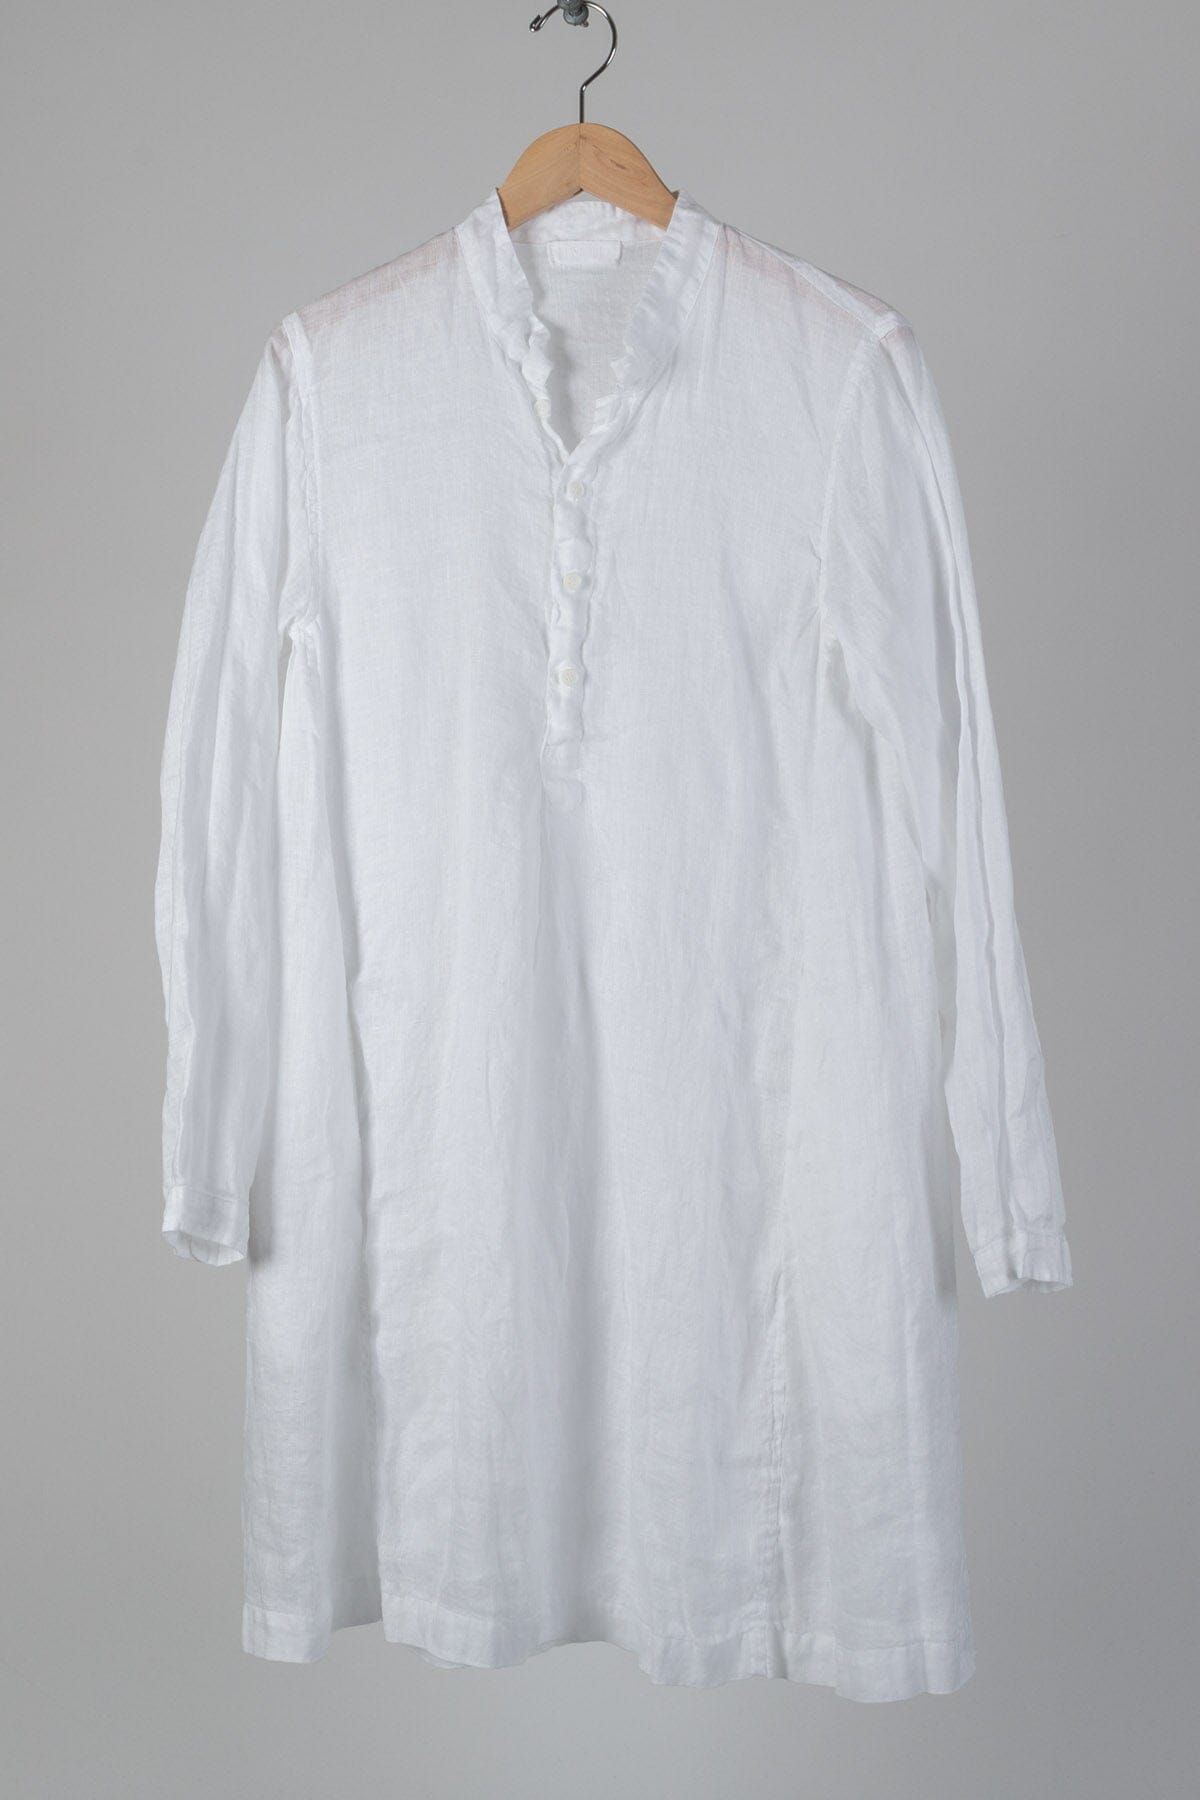 Jasmine - Linen S10 - Linen Shirt/Top/Tunic CP Shades 